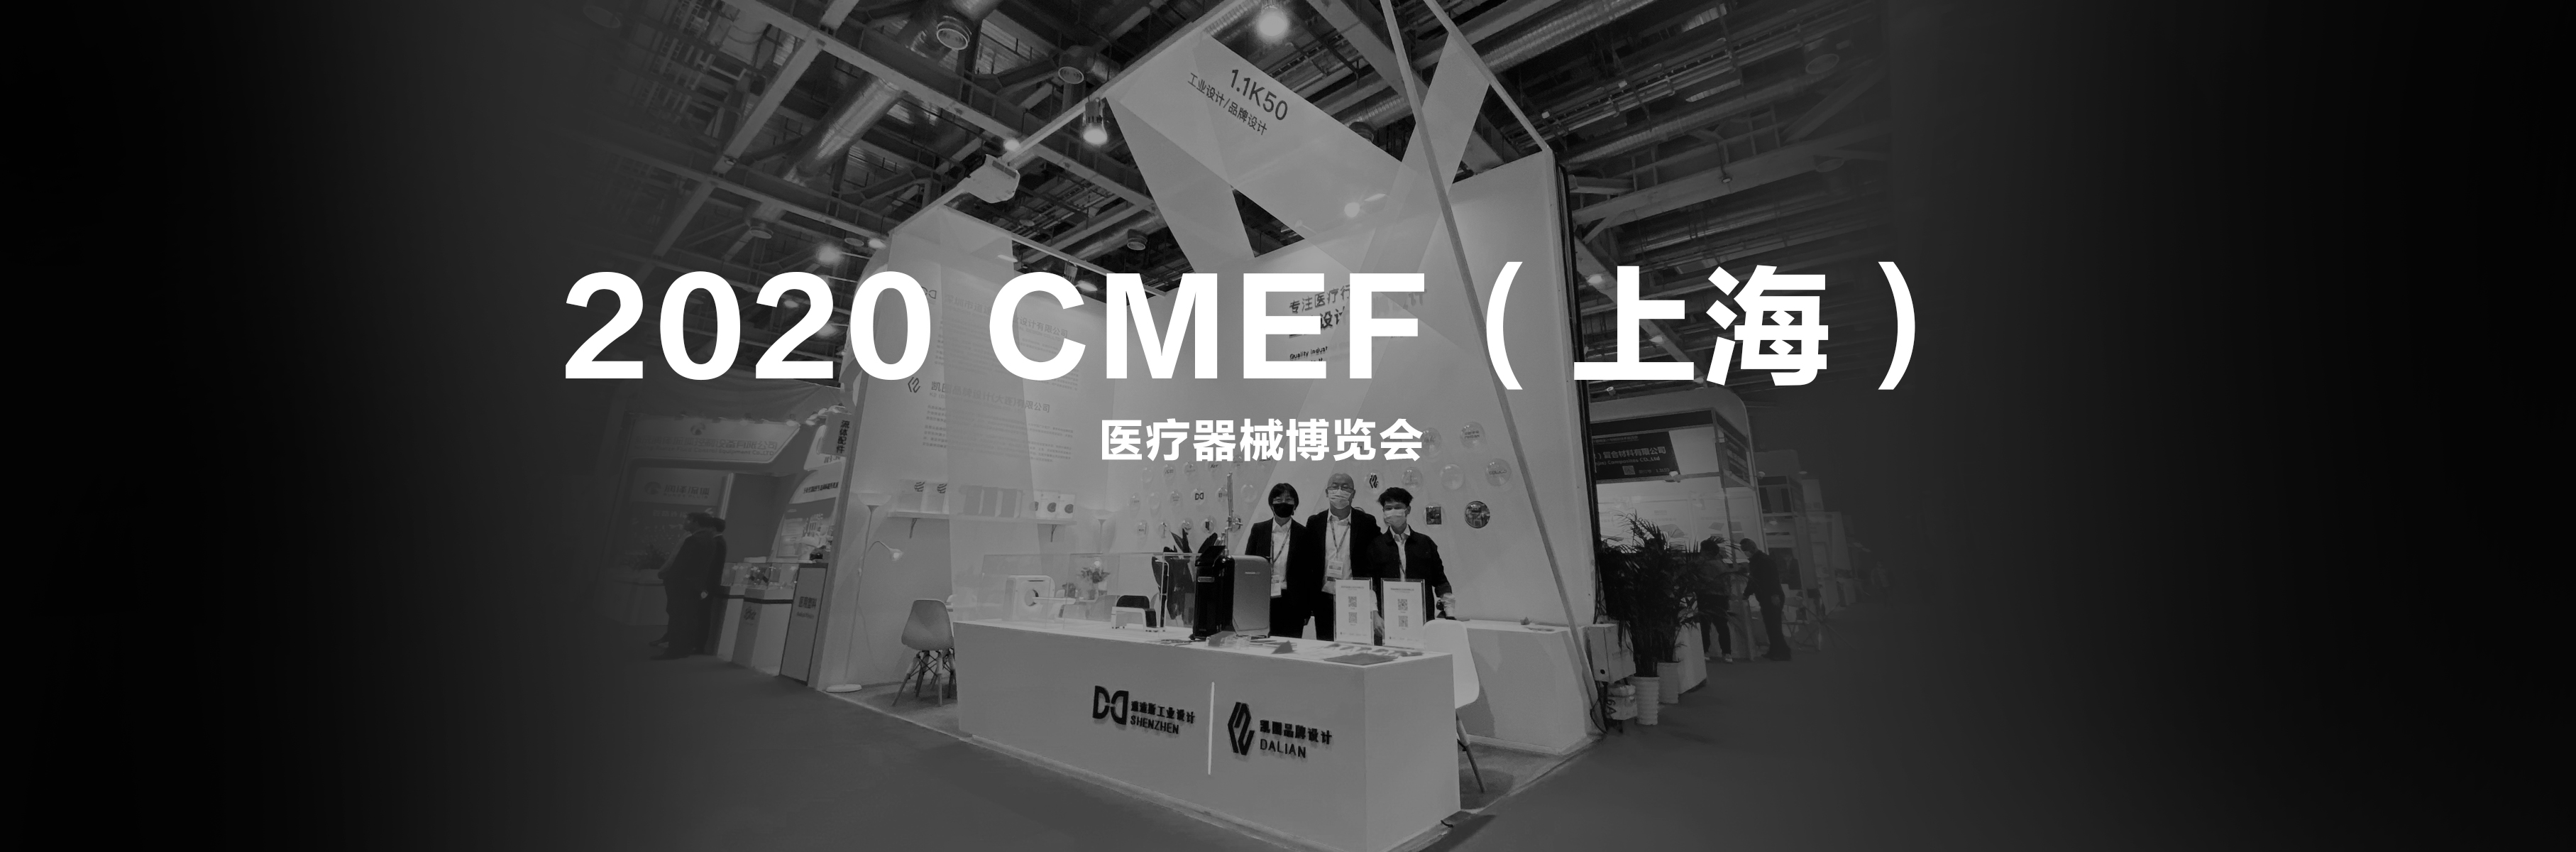 2020 CMEF医疗博览会